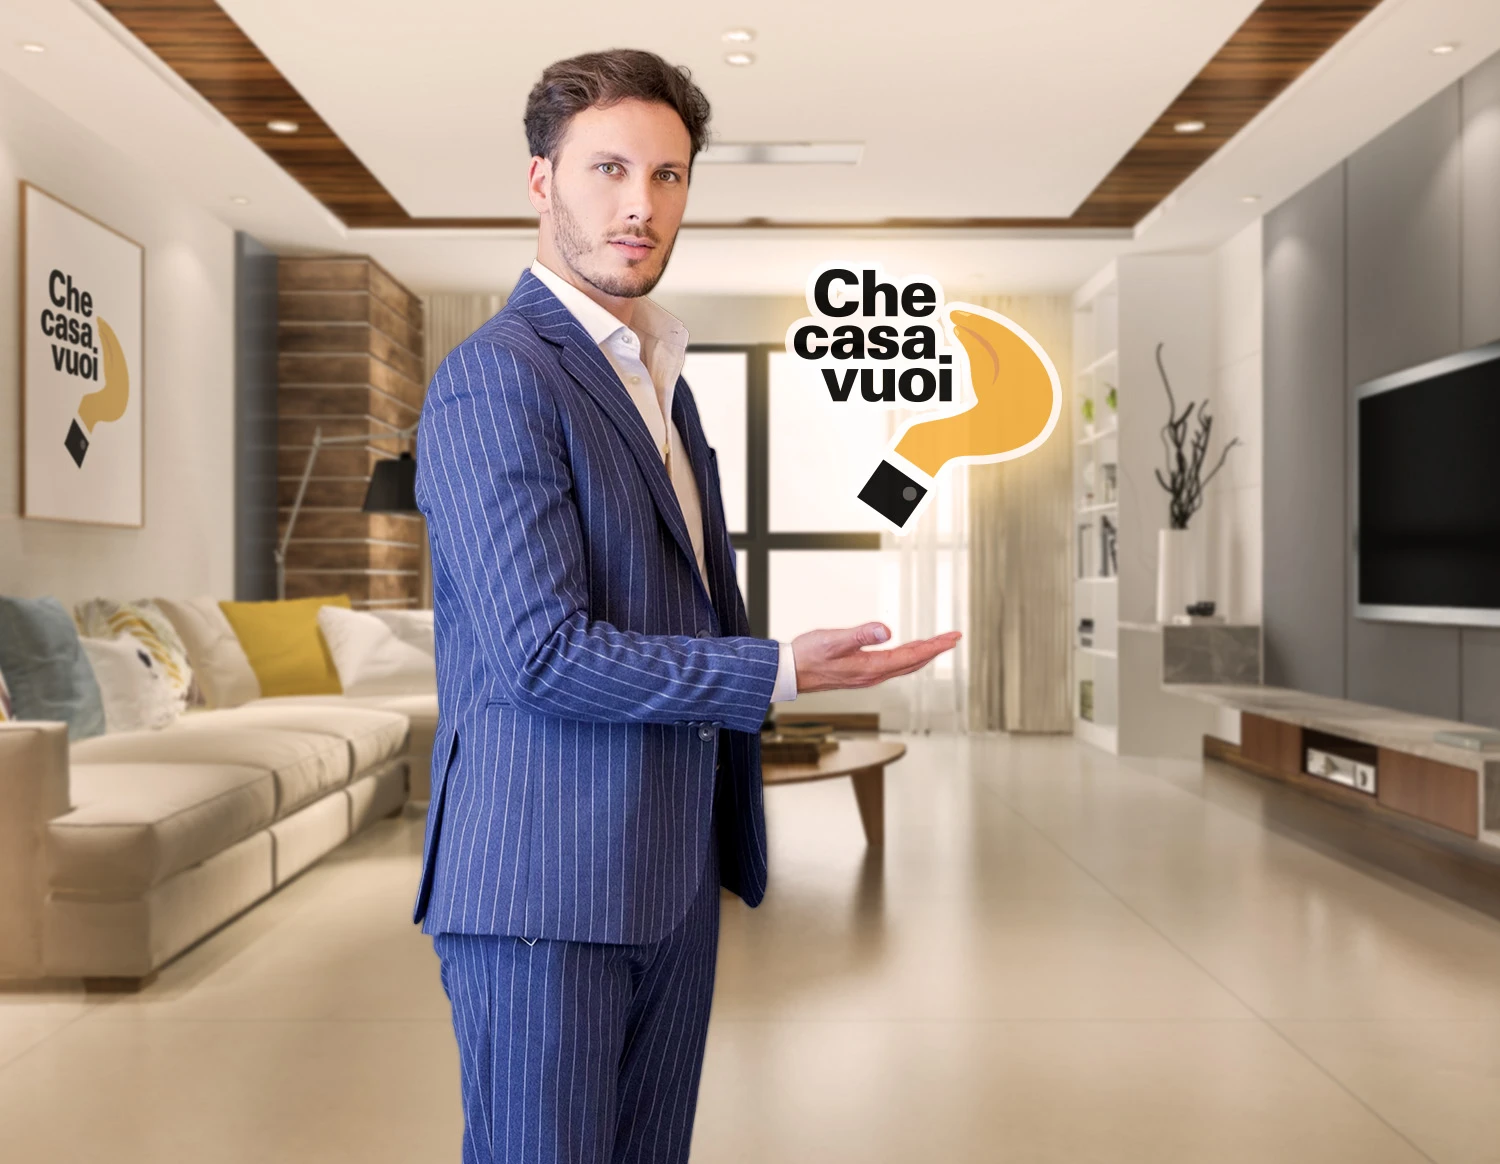 Checasavuoi.it - Il primo portale in Italia che ti aiuta a comprare, ristrutturare e arredare casa risparmiando tempo e soldi.